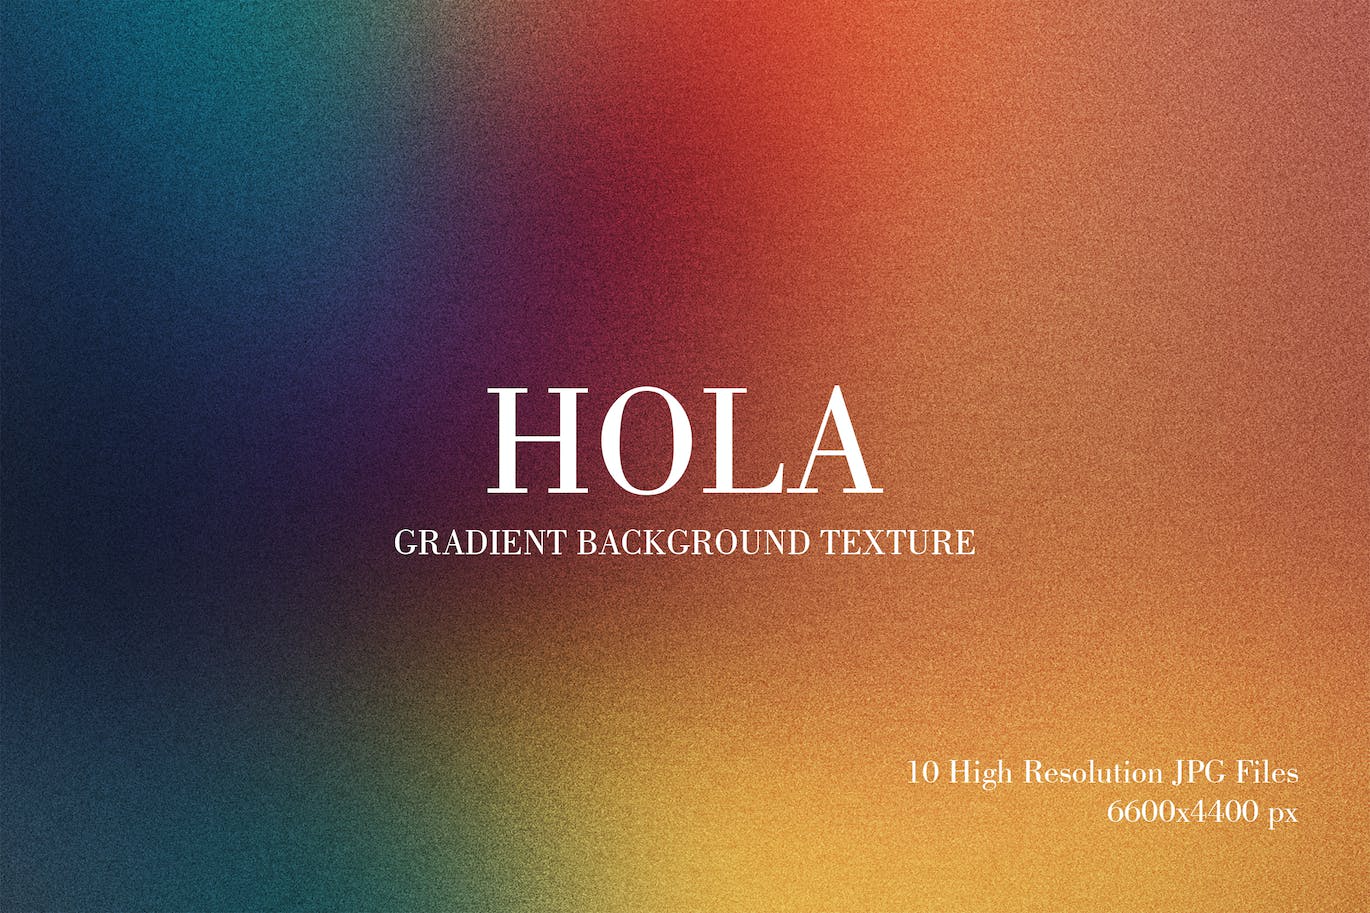 梯度渐变背景纹理 Hola Gradient Background Texture 图片素材 第1张